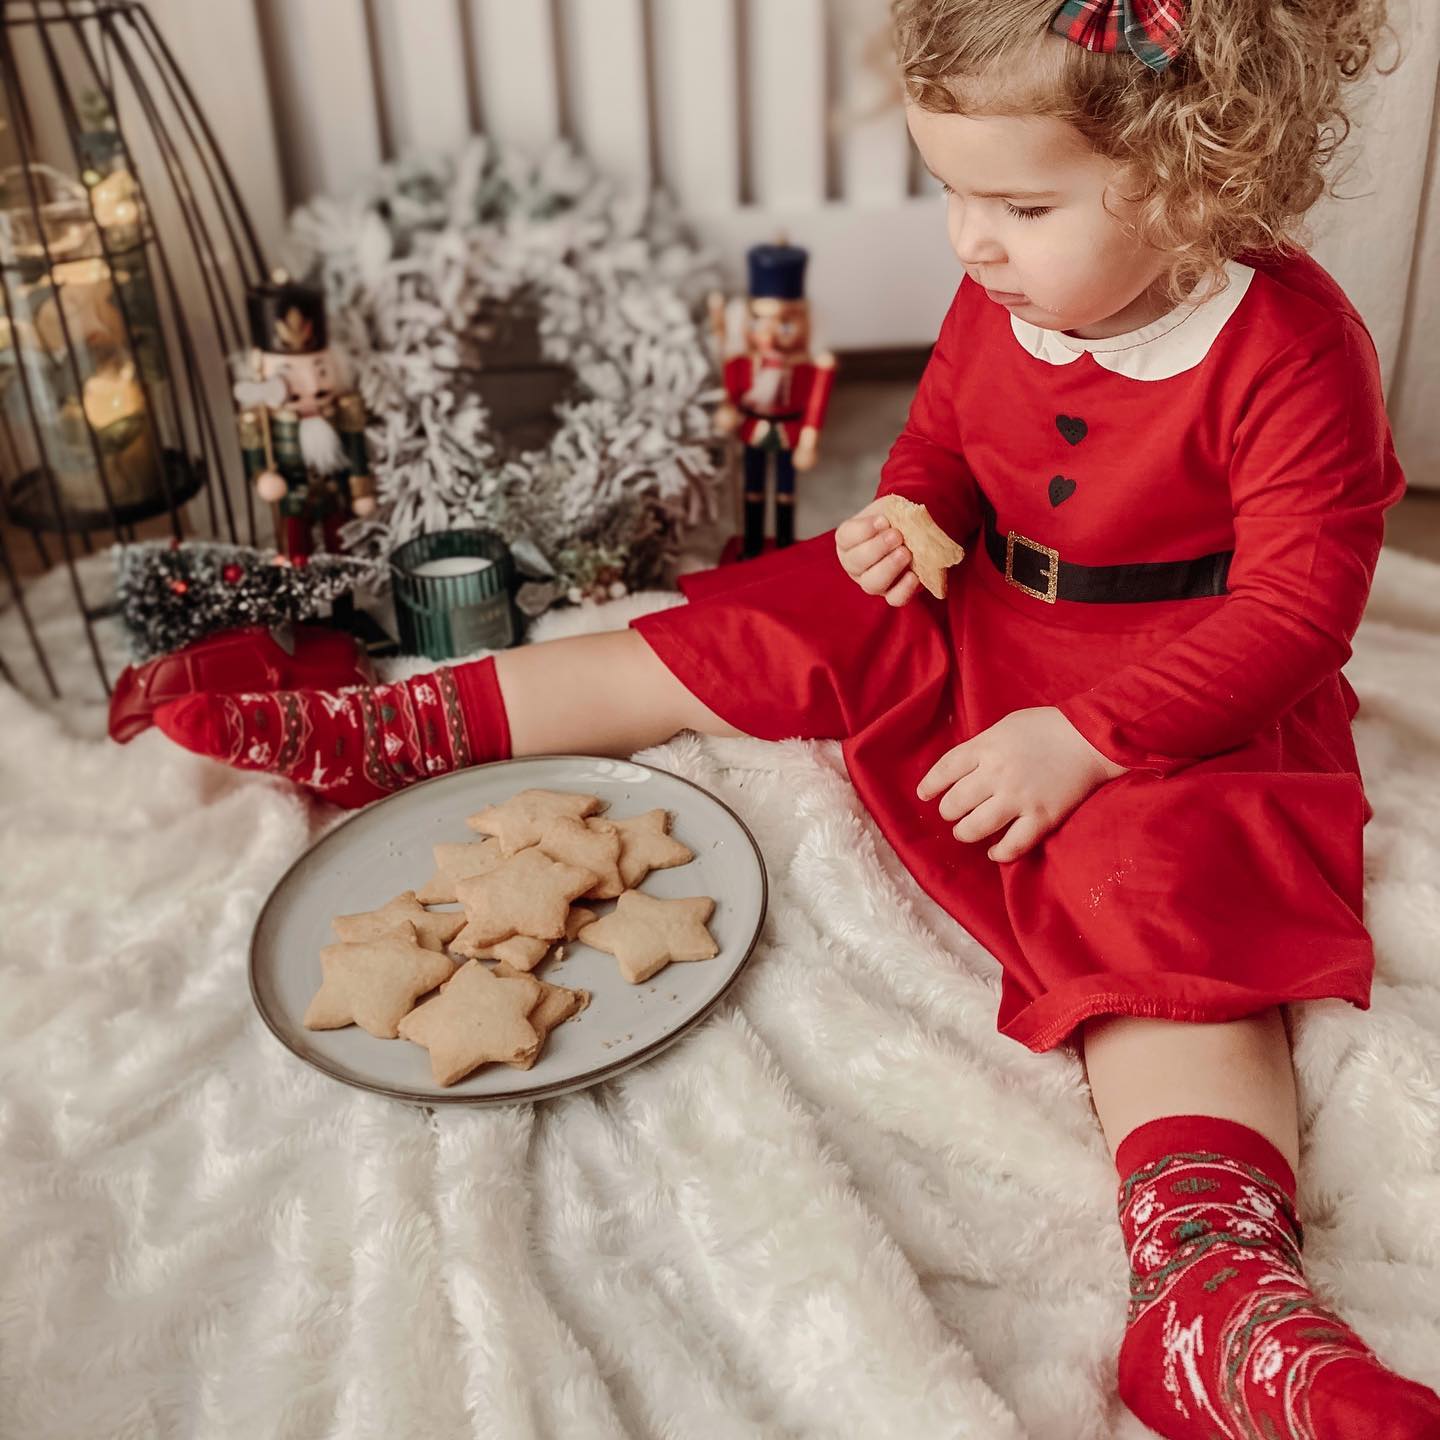 Elves & Reindeers Socks / Baby / Kids / Adult - Faves. Socks&Friends